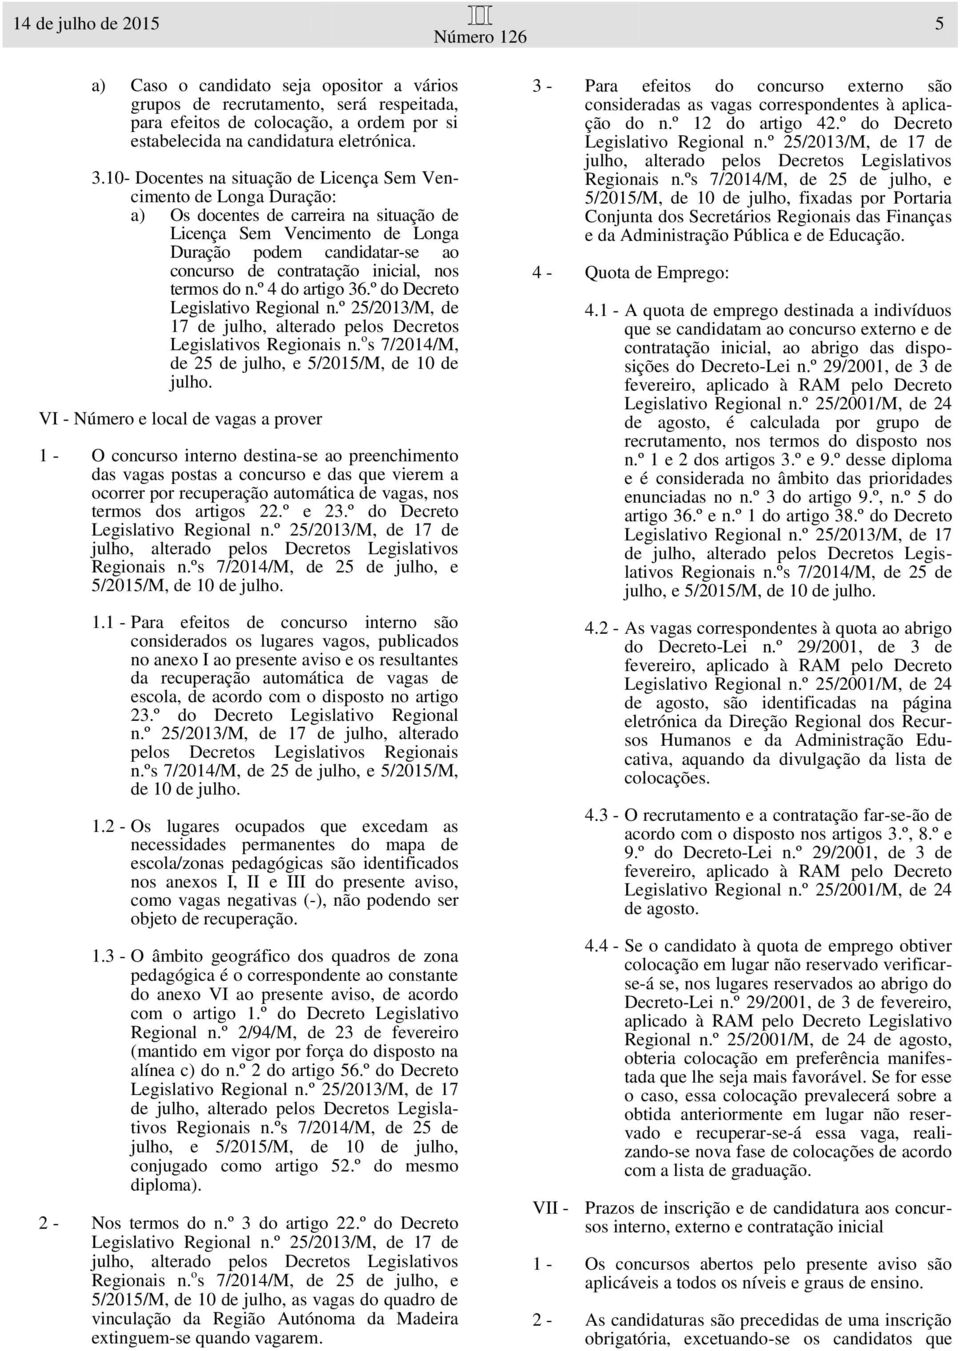 inicial, nos termos do n.º 4 do artigo 36.º do Decreto Legislativo Regional n.º 25/2013/M, de 17 de julho, alterado pelos Decretos Legislativos Regionais n.